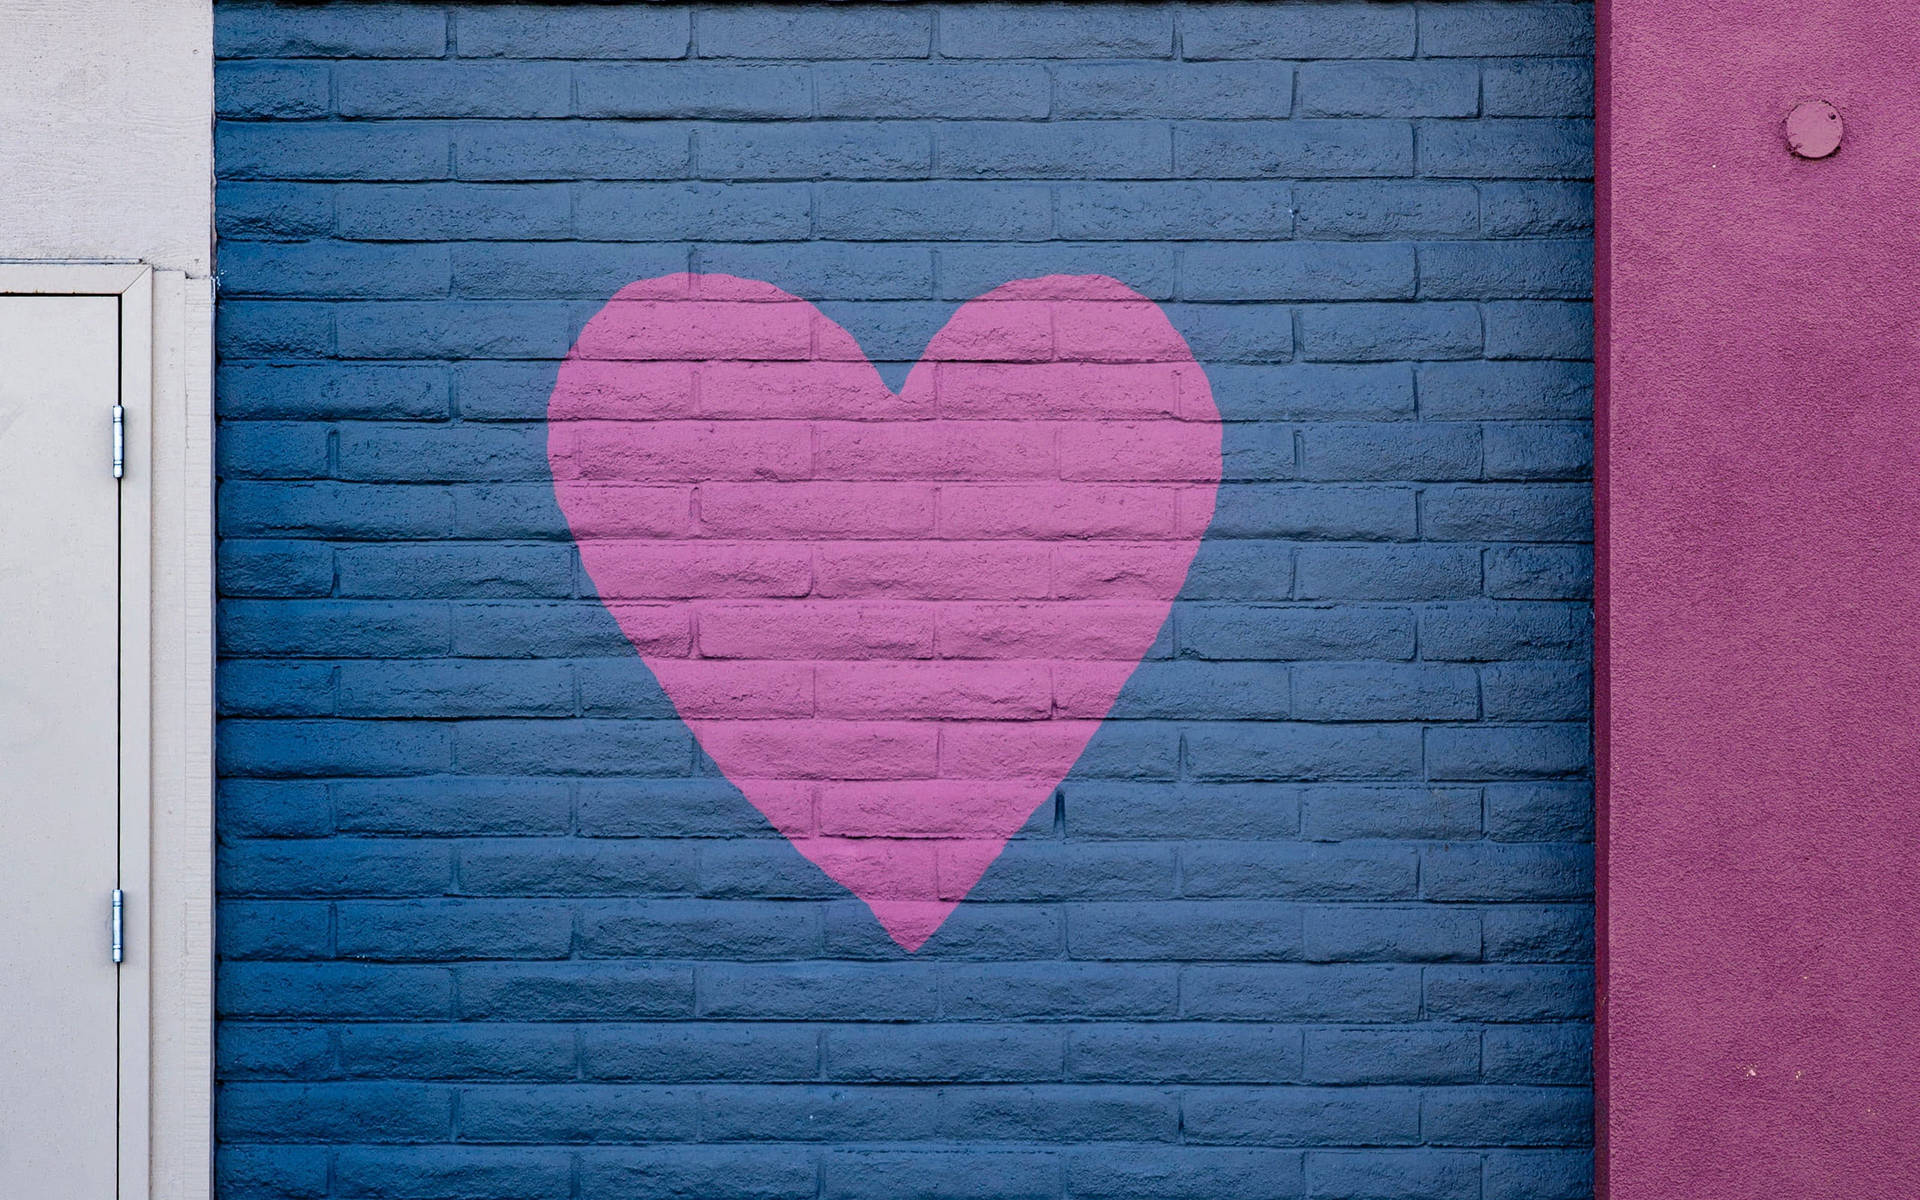 Pink Heart Wall Art Wallpaper